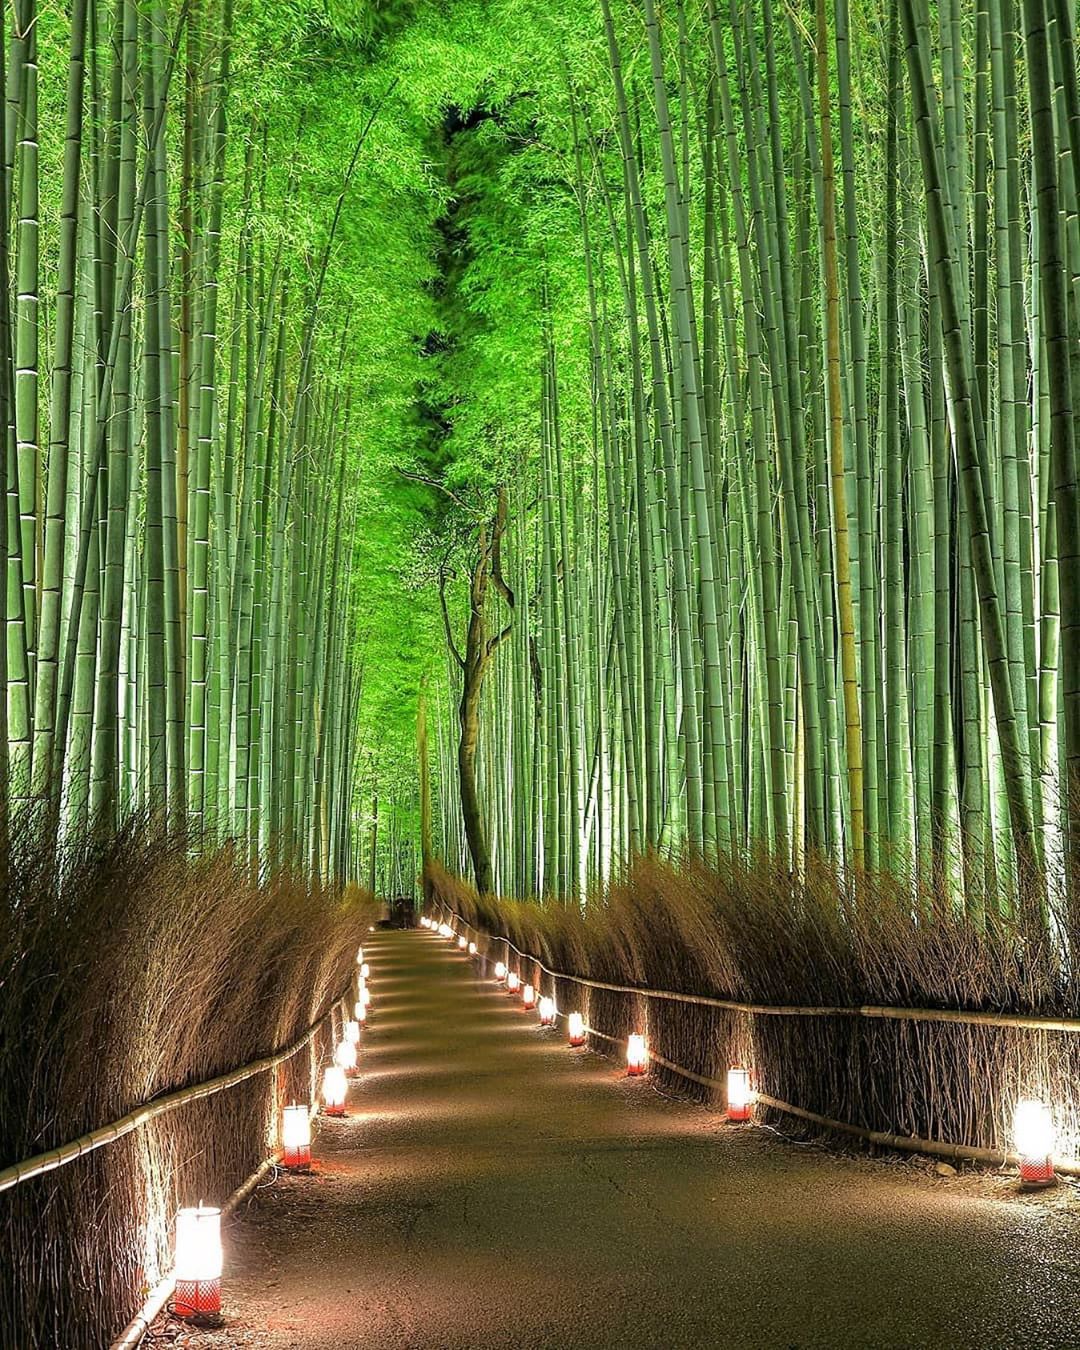 Retrip News Retrip 嵐山 京都の嵯峨 嵐山地域で 京都 嵐山花灯路 19 が昨日から始まりました 渡月橋 を始め 文化施設や自然が美しくライトアップされています Wacoca Japan People Life Style